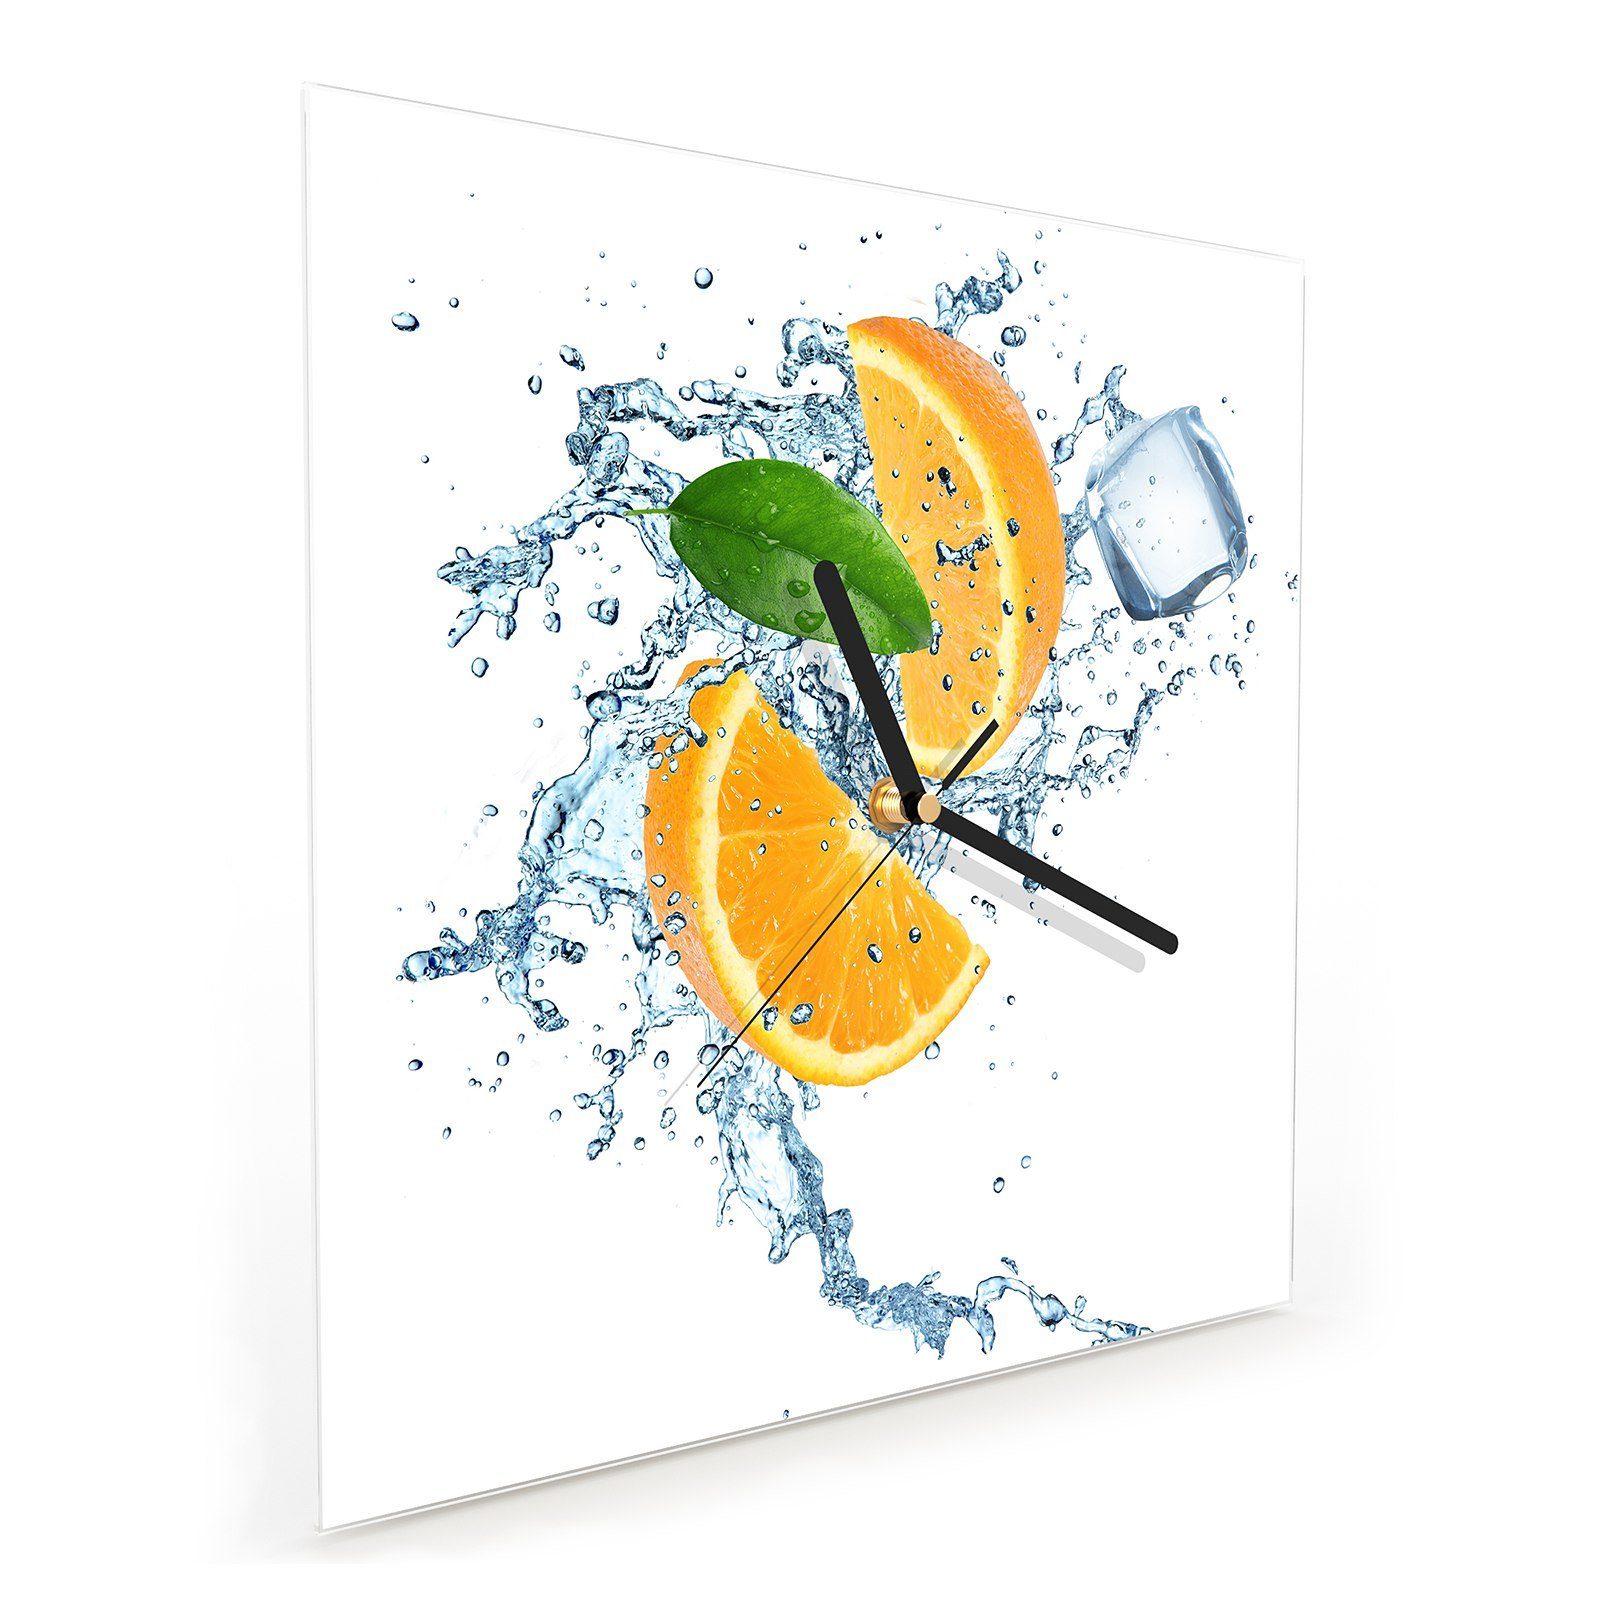 30 Primedeco Wanduhr Orangenschnitze x Glasuhr mit Wanduhr Wandkunst Motiv cm Größe im 30 Wasser